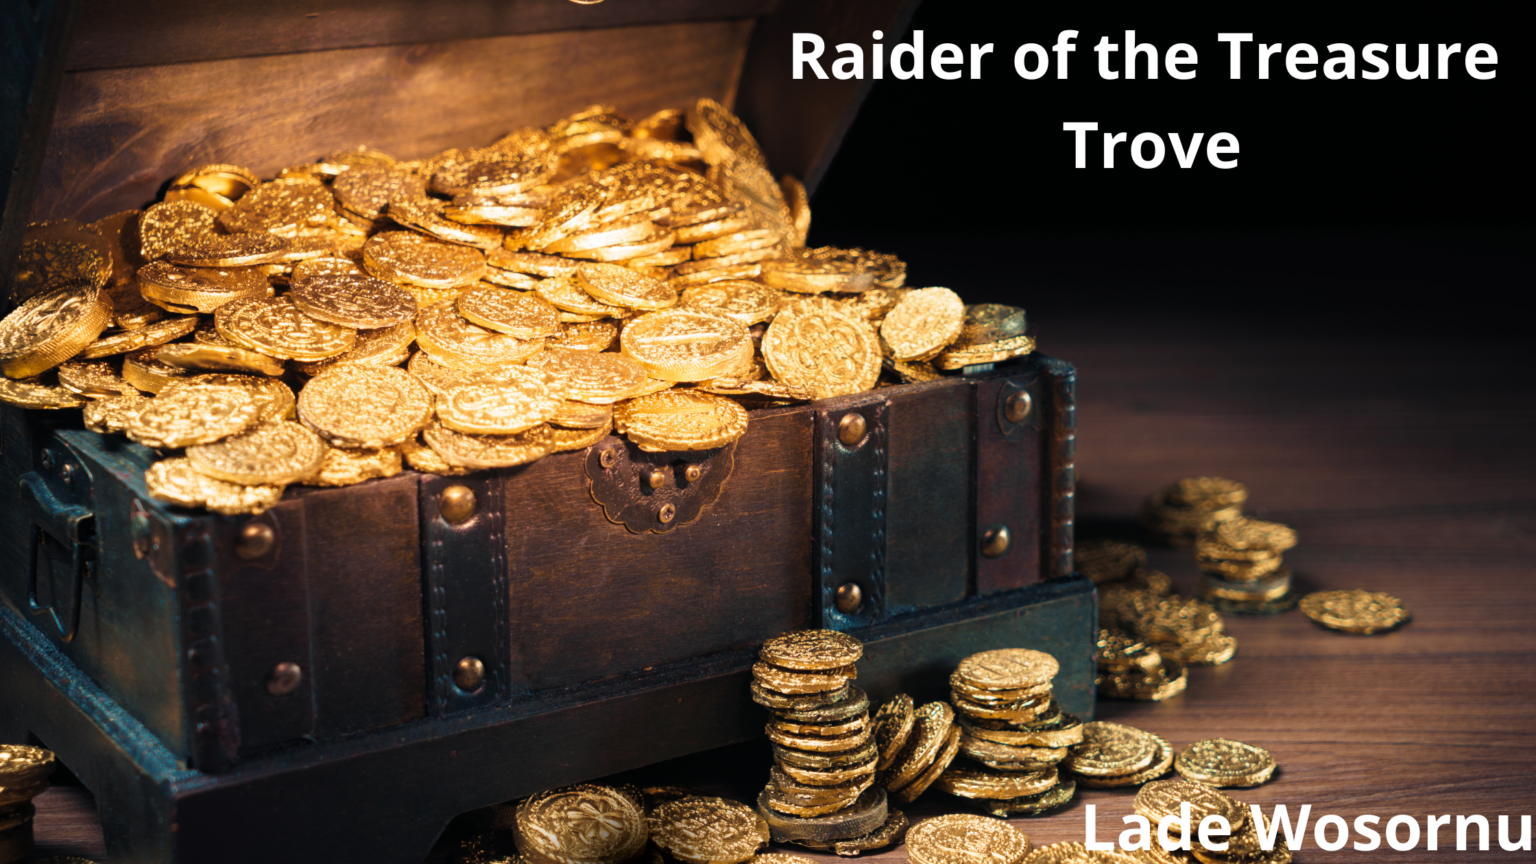 essay questions on raider of the treasure trove